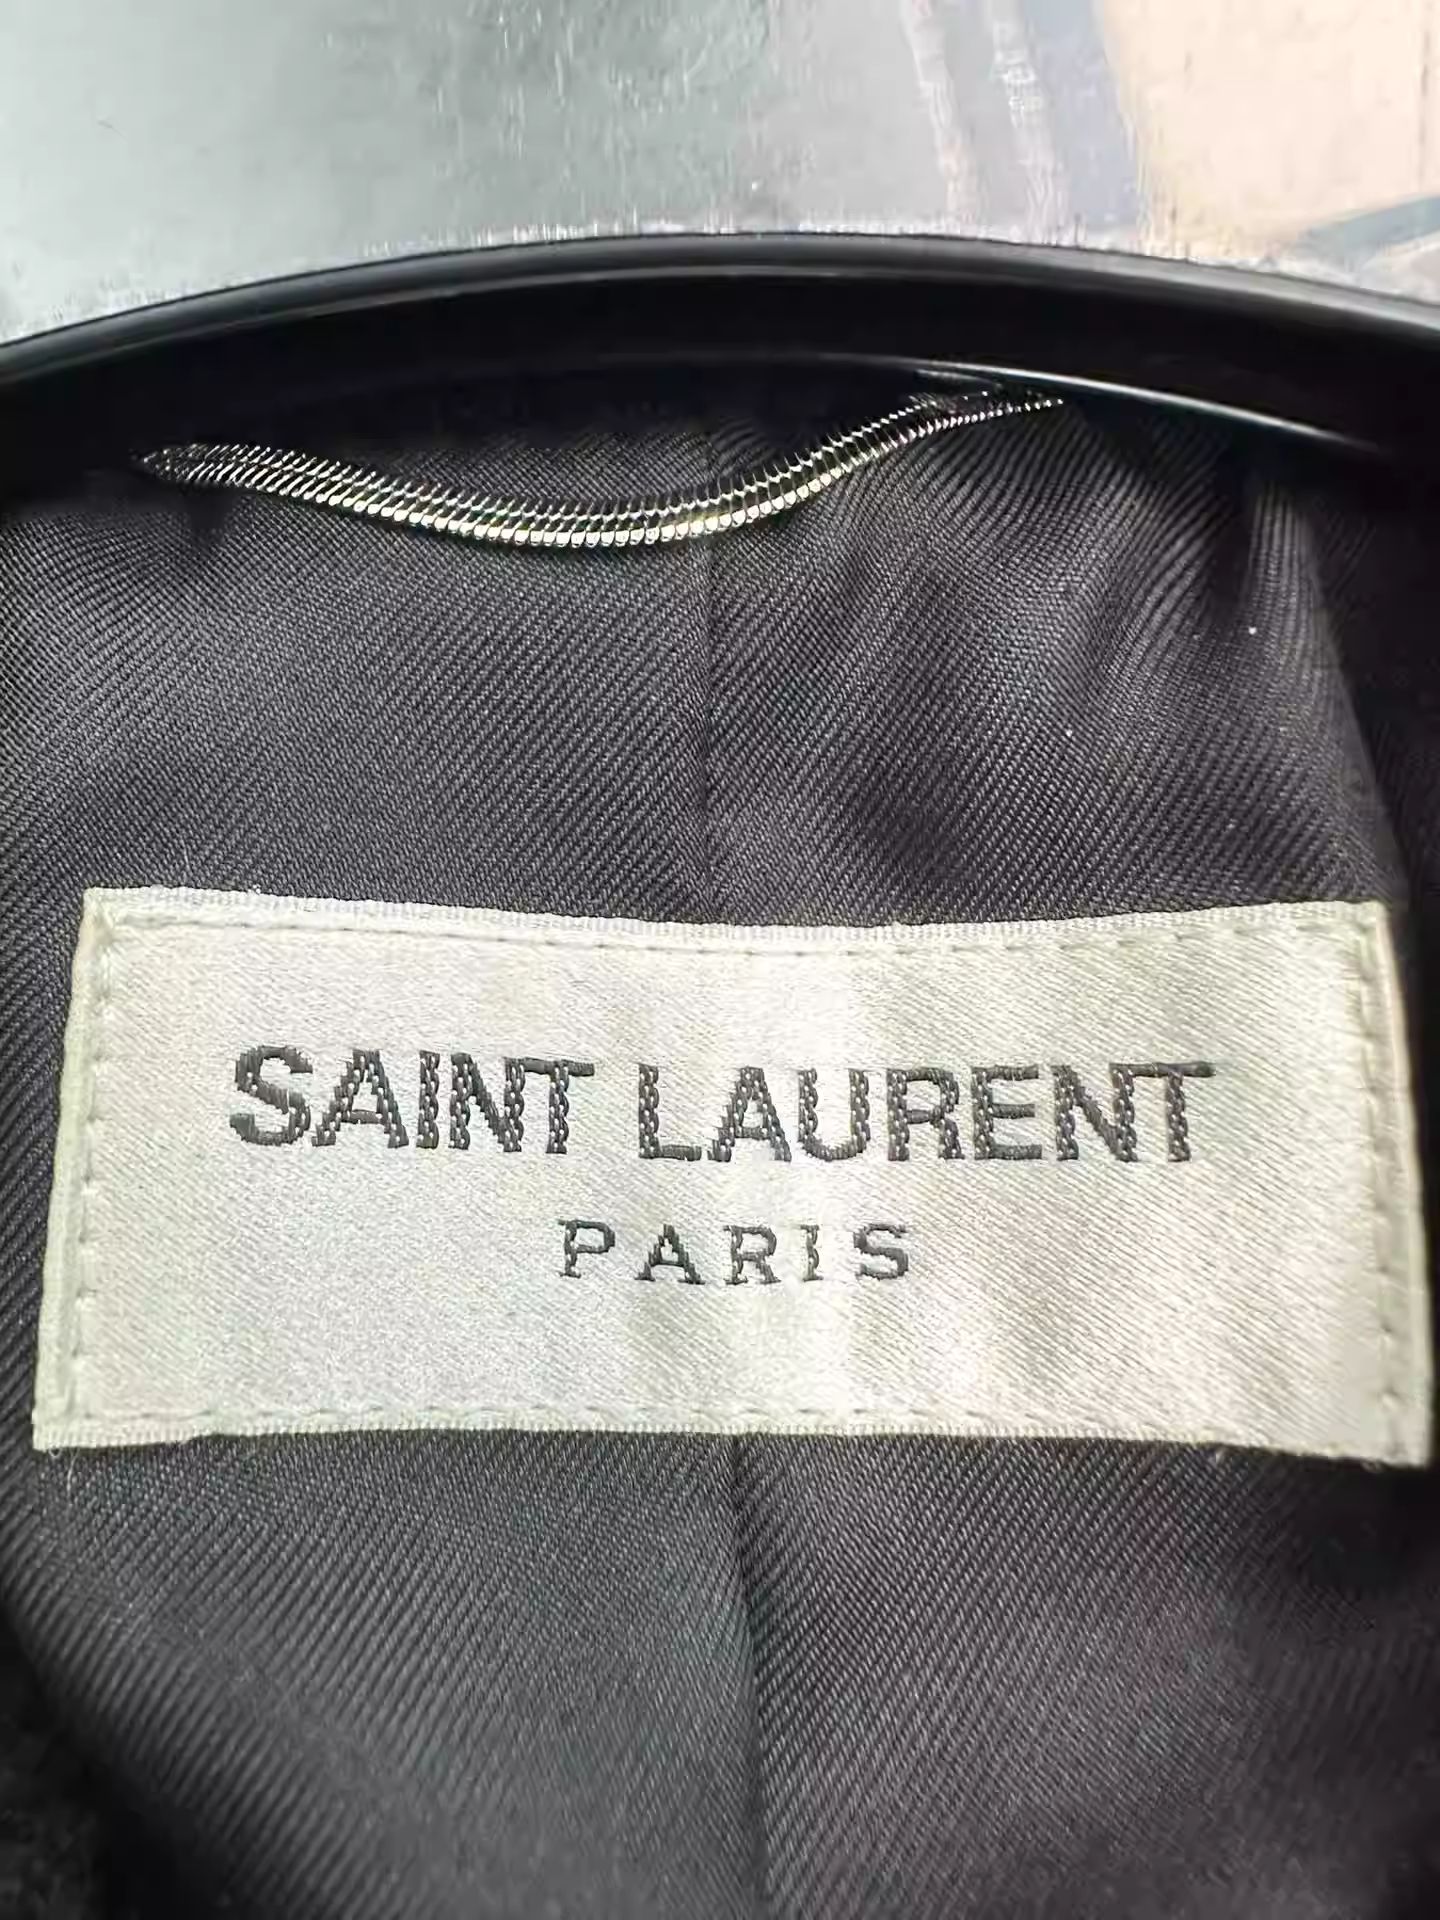 Saint Laurent Paris Saint Laurent Marrakech Jukebox Velvet Jacket Size US M / EU 48-50 / 2 - 3 Thumbnail